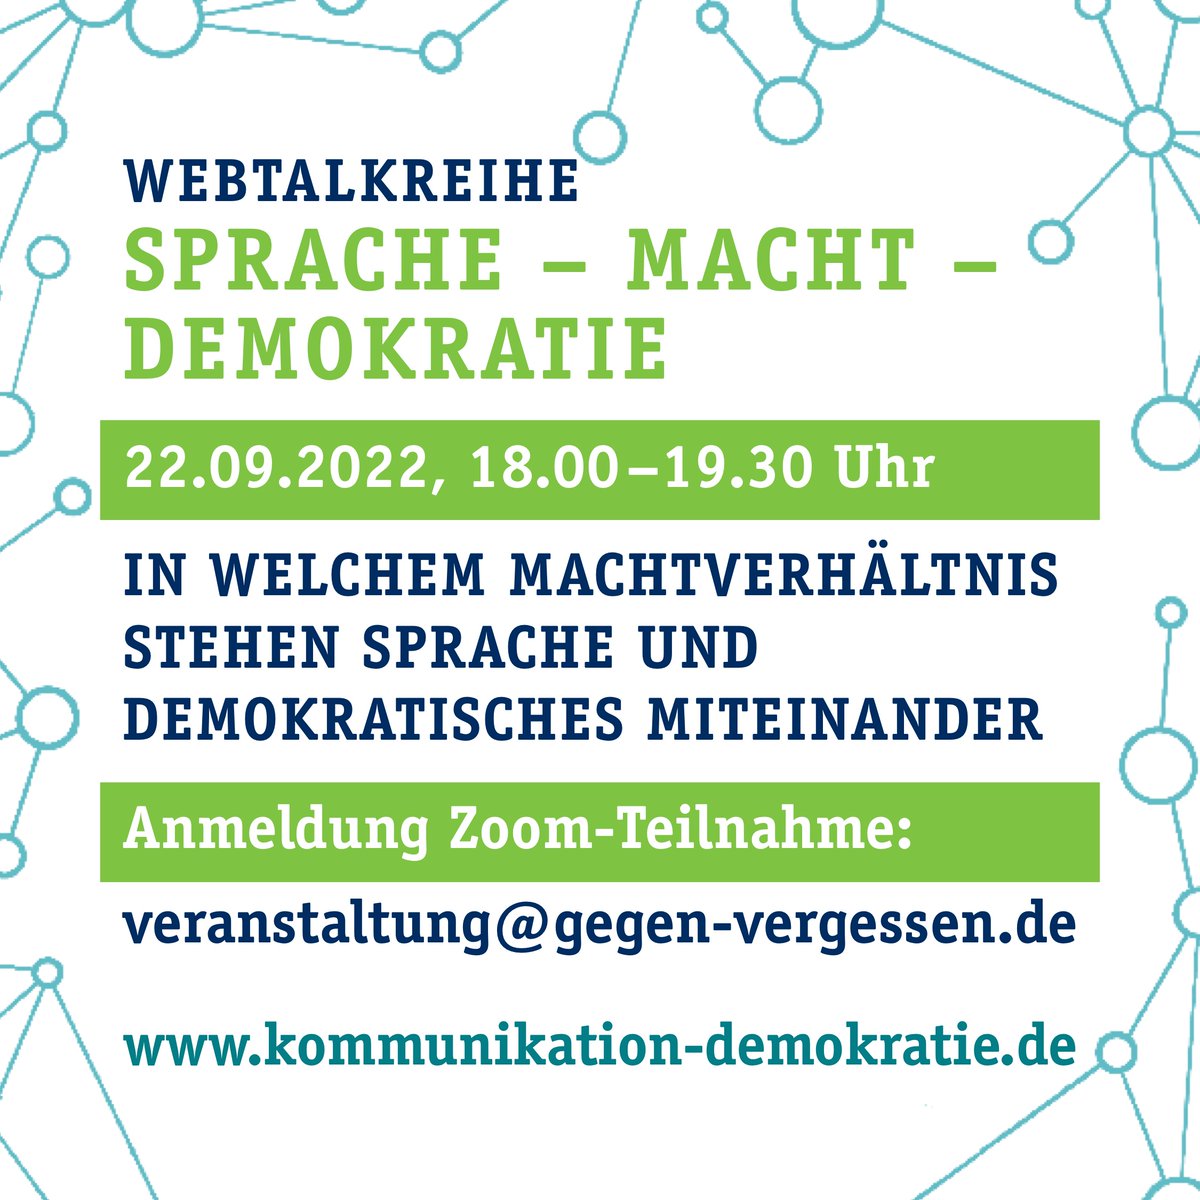 Herzliche Einladung zu unserem Webtalk zum Thema 'In welchem Machtverhältnis stehen Sprache und demokratisches Miteinander?' #kn_zusammenleben kommunikation-demokratie.de/konstruktive-k…